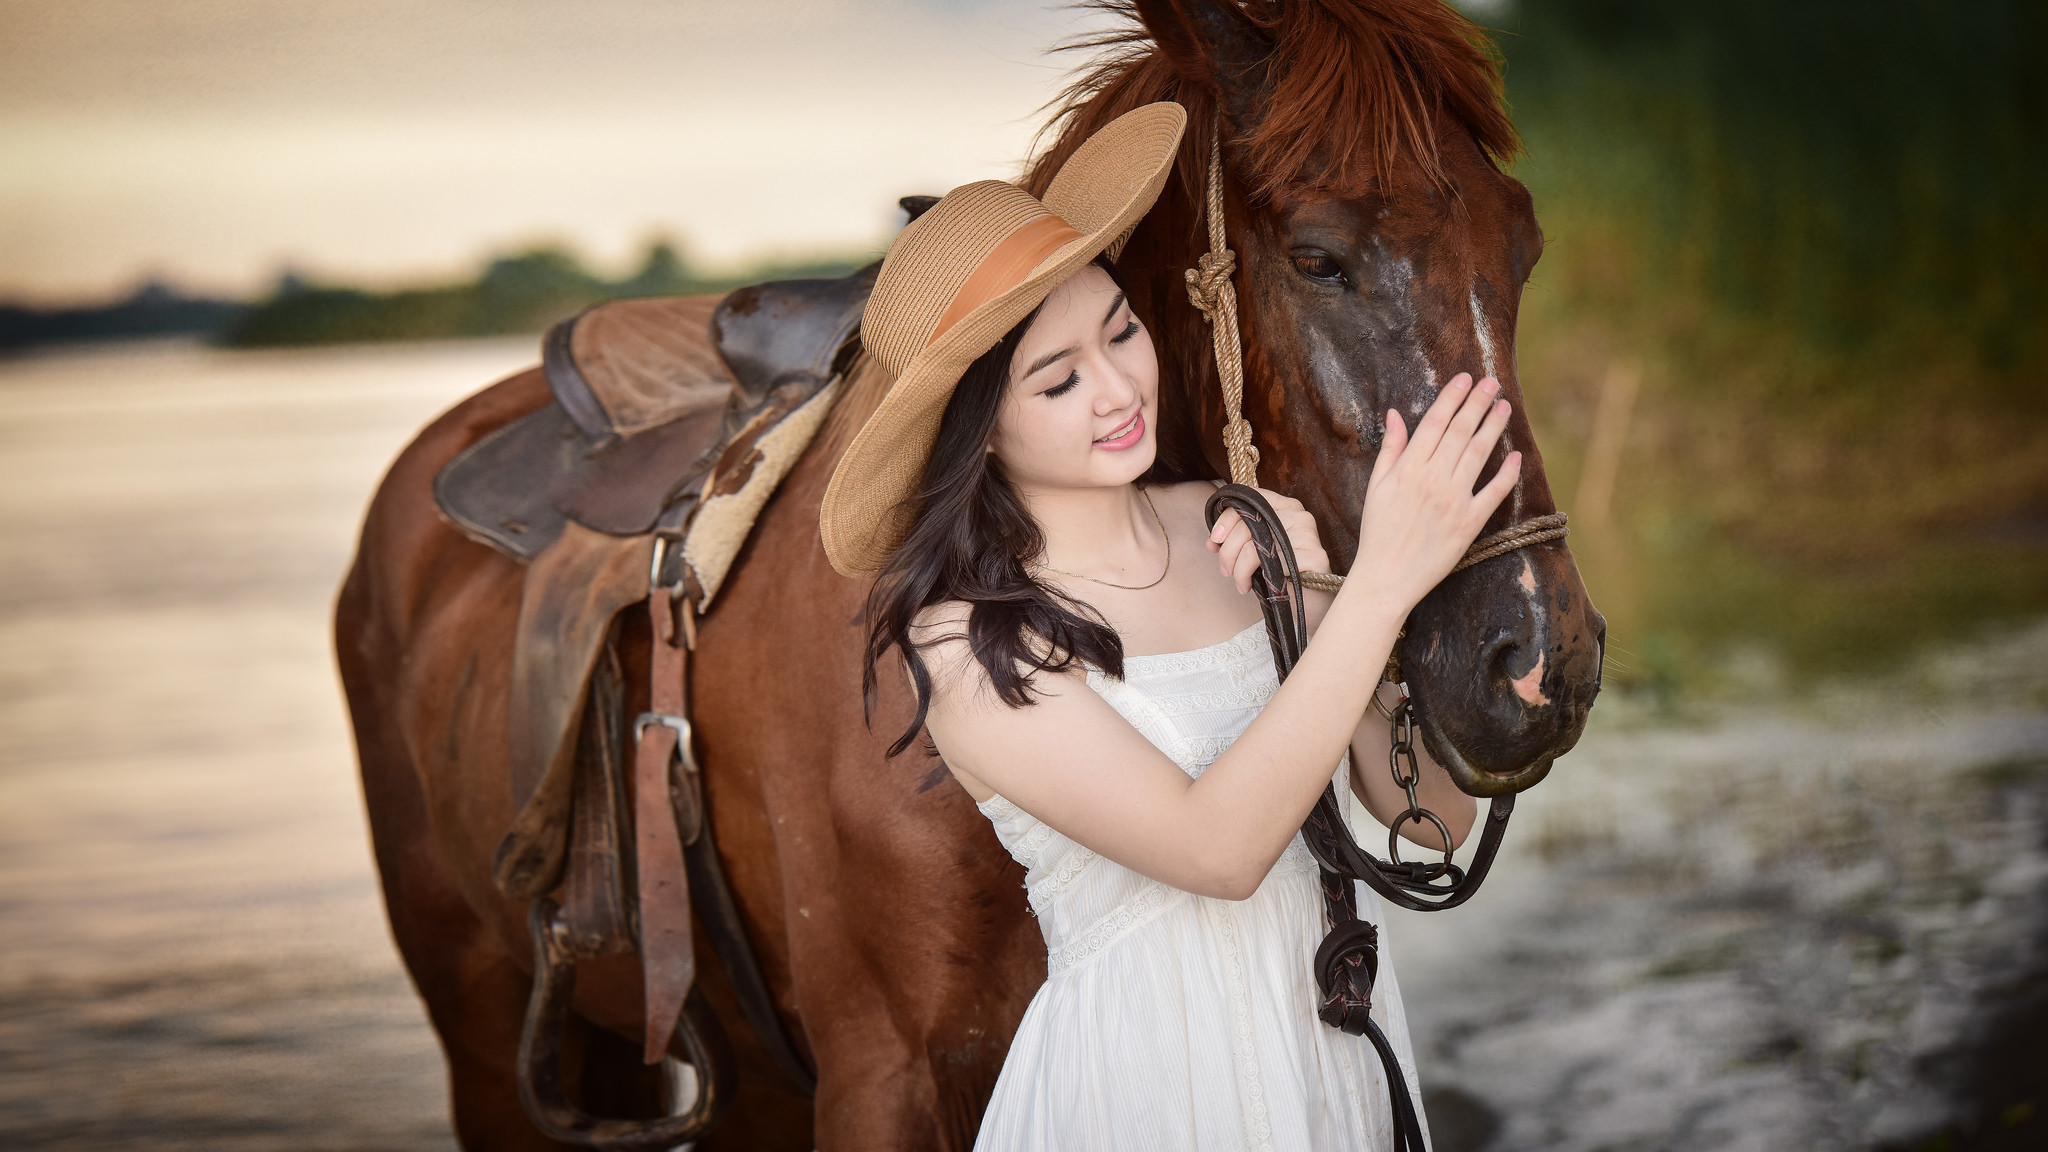 Download mobile wallpaper Horse, Hat, Brunette, Model, Women, Asian, White Dress for free.